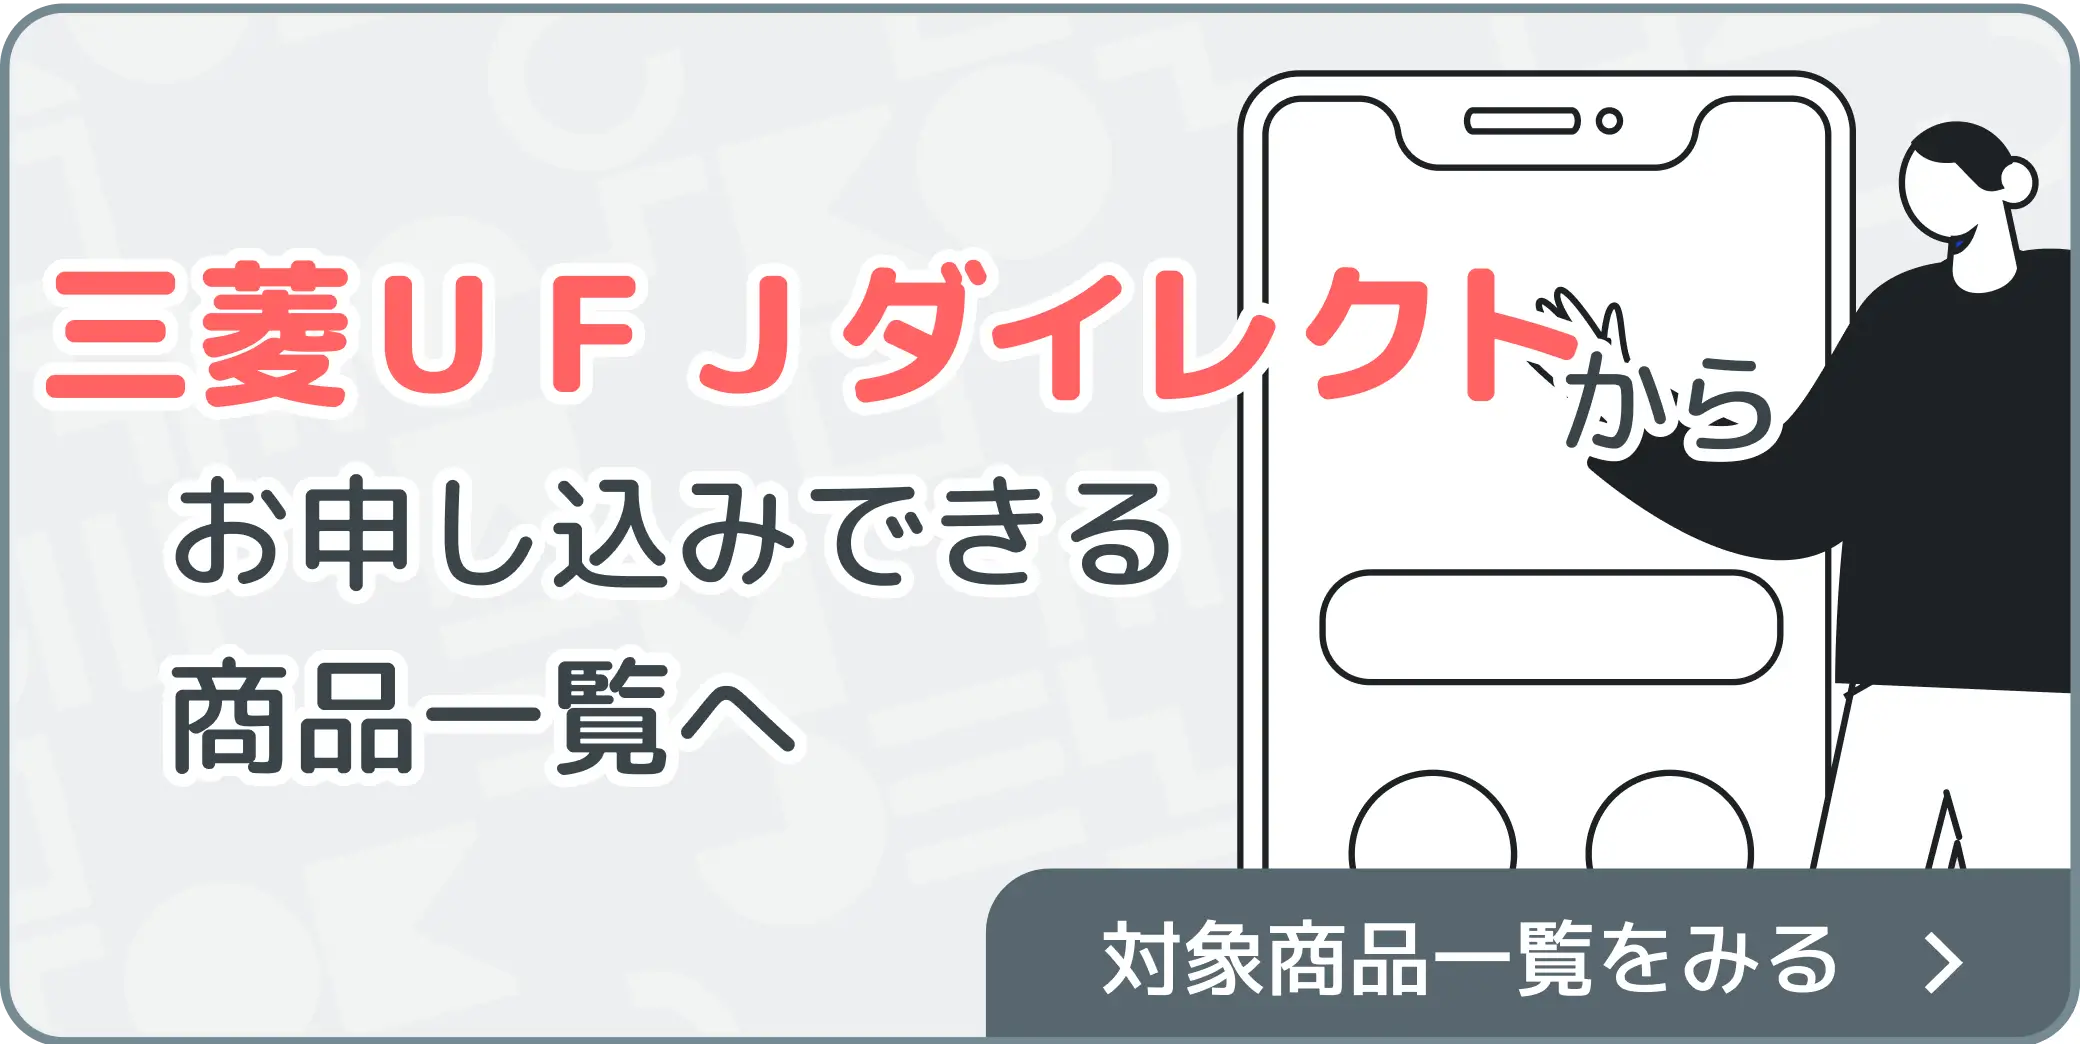 UFJ_Banner